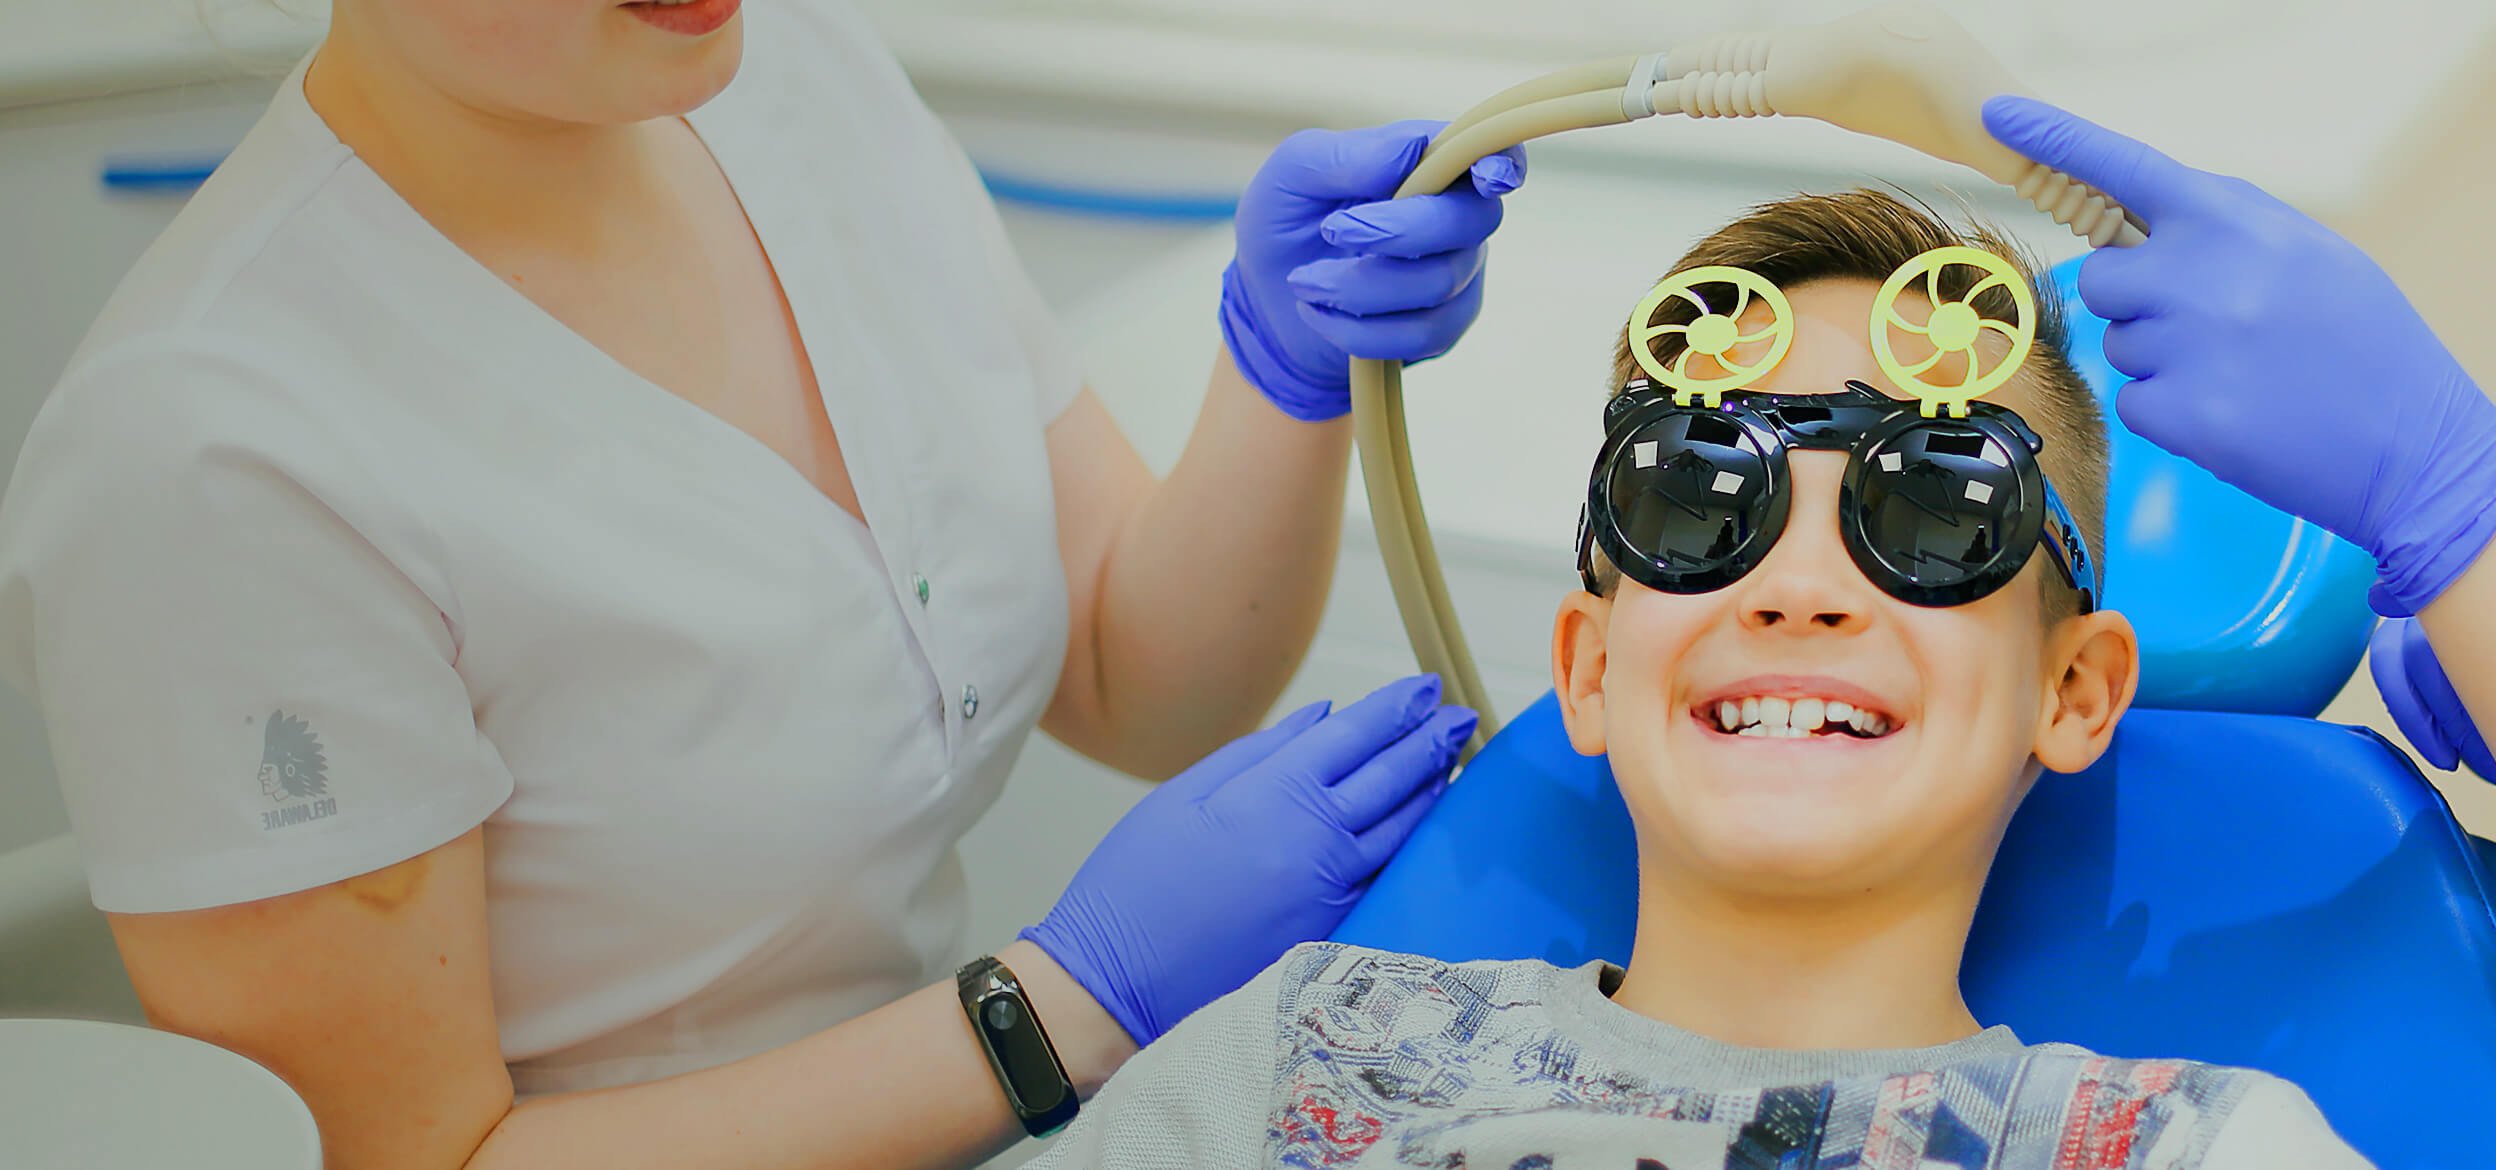 Зубы общий наркоз спб. Детская седация в стоматологии. Закись азота в стоматологии для детей. Седация закисью азота в детской стоматологии.